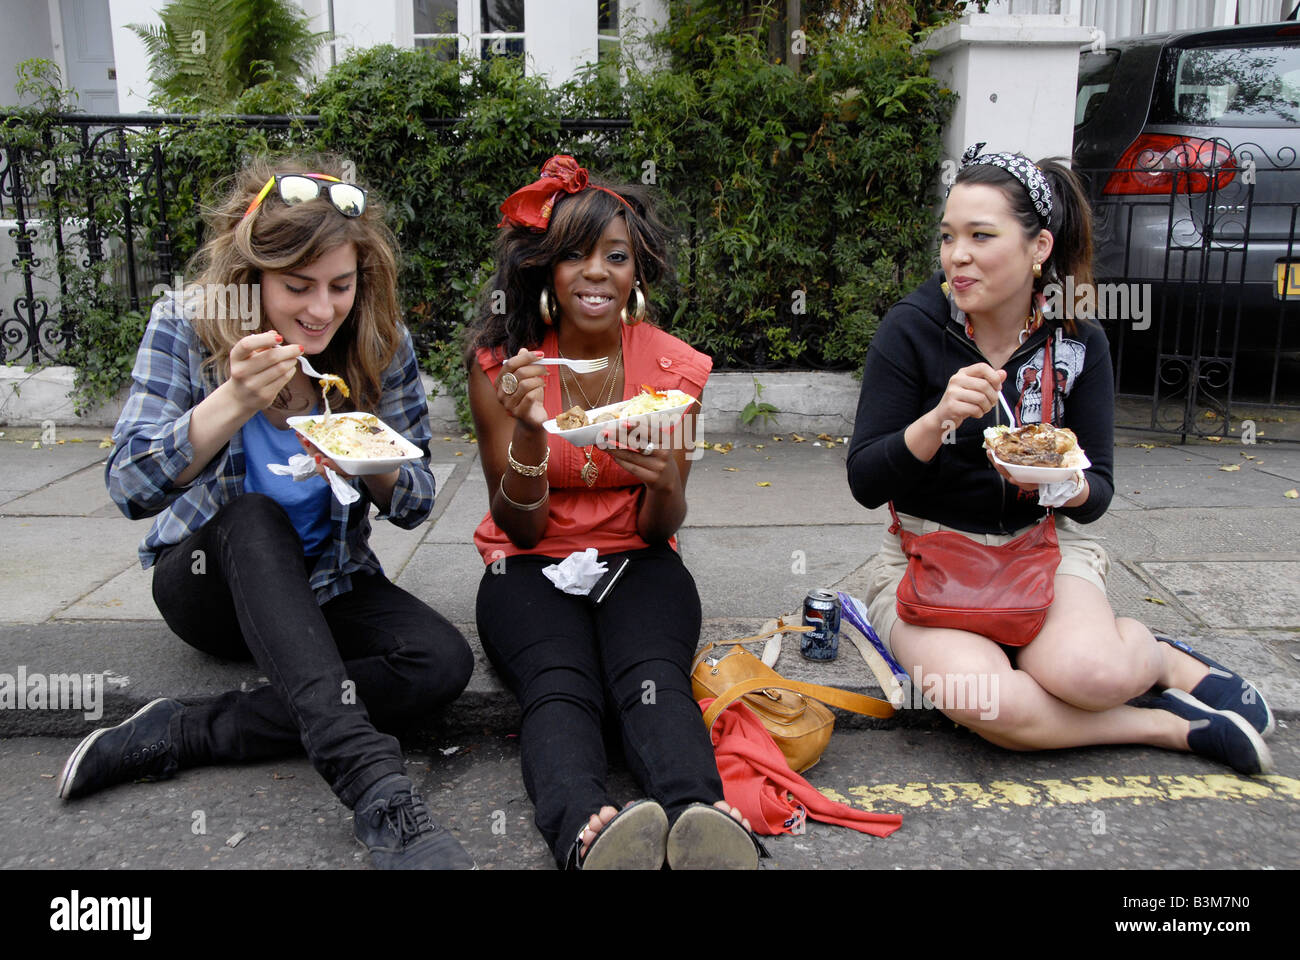 Trois jeunes femmes assises sur la chaussée eating fast food à emporter Banque D'Images